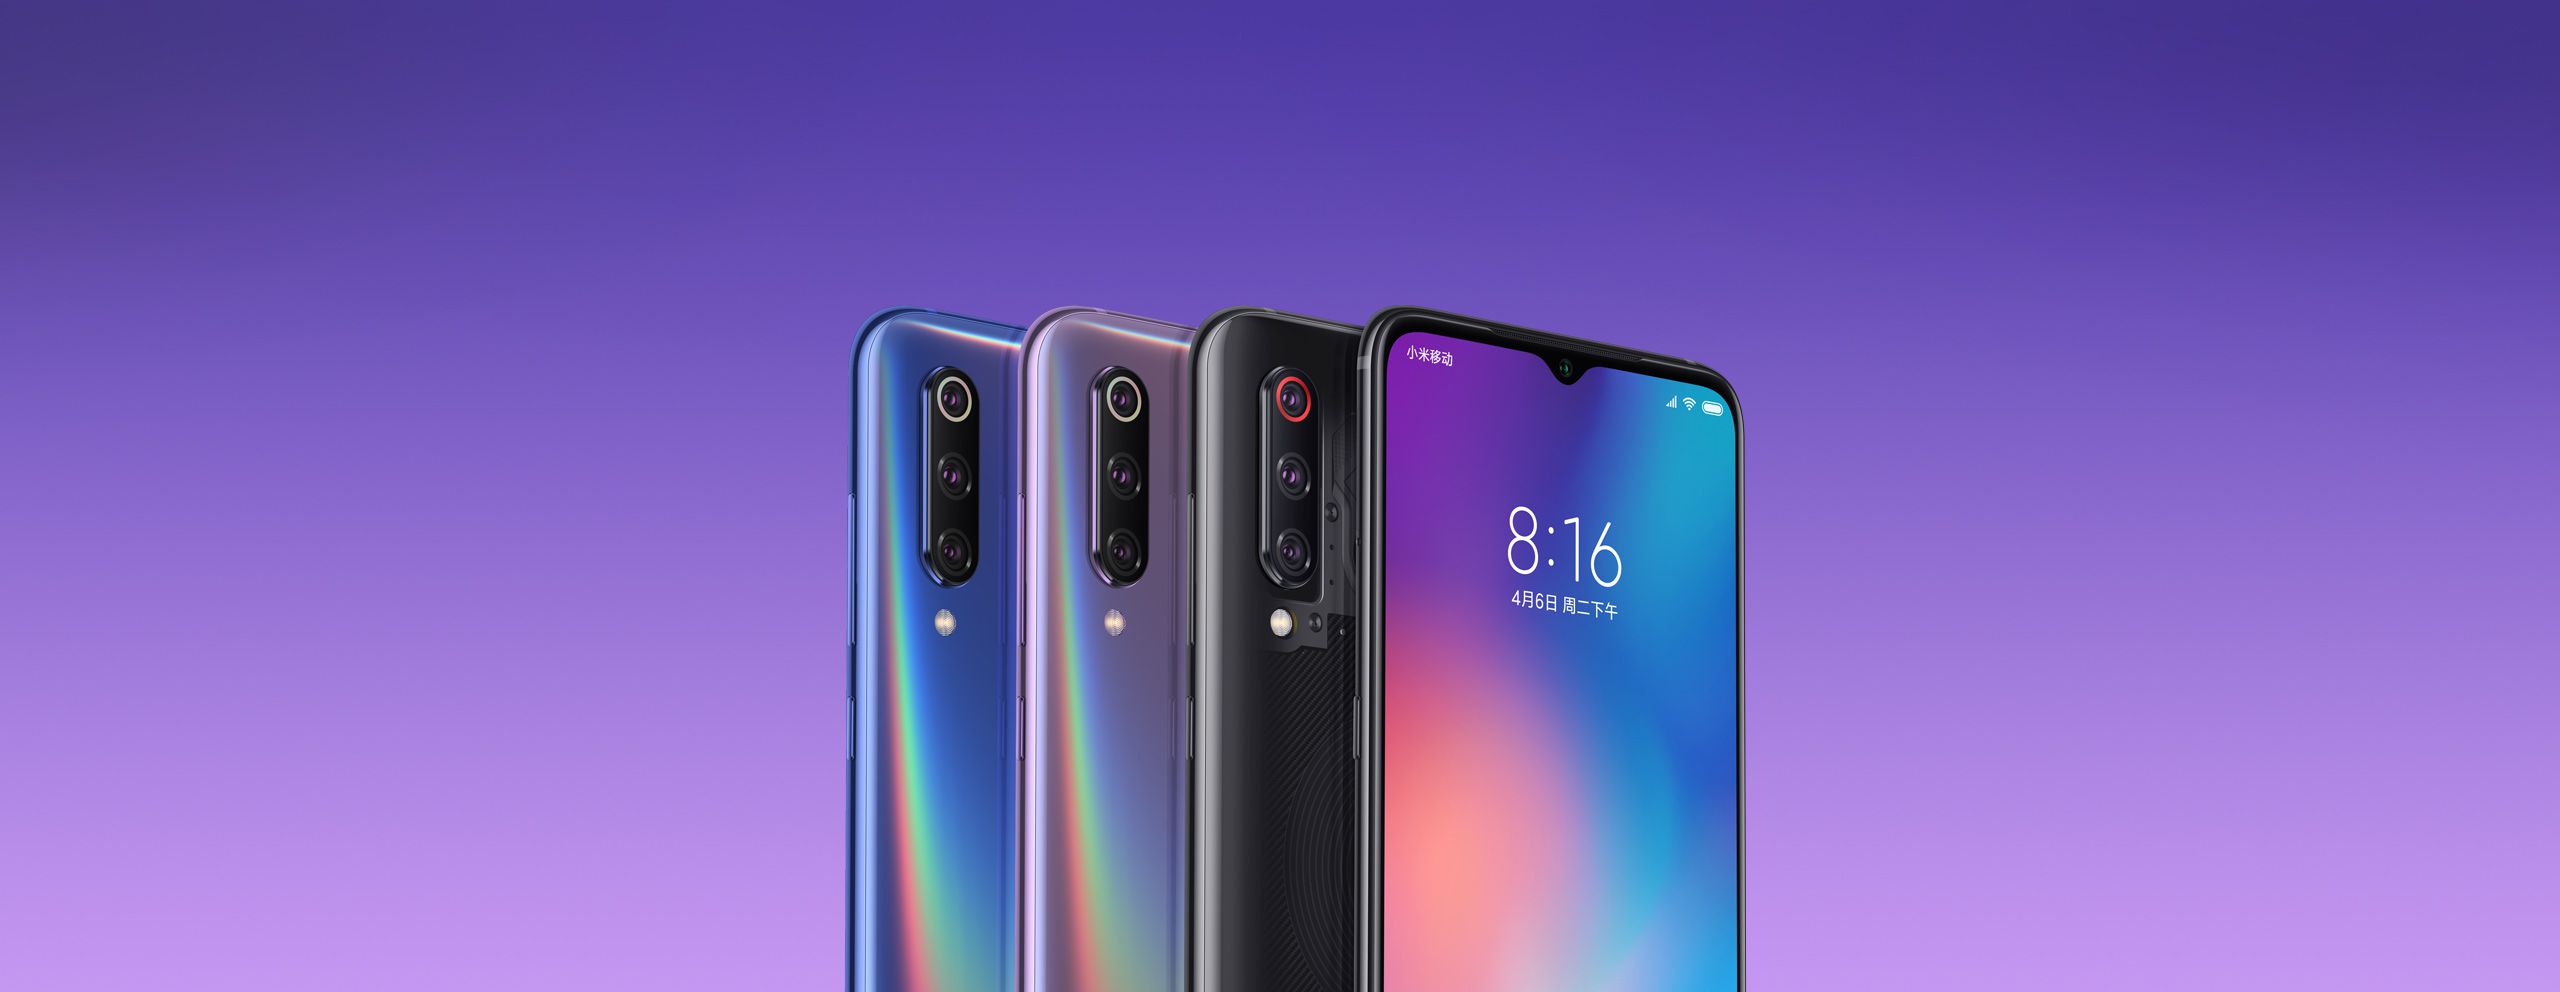 Xiaomi Mi9 presentato ufficialmente: con il suo prezzo sarà lo smartphone top di gamma del 2019 da battere... almeno in Cina?